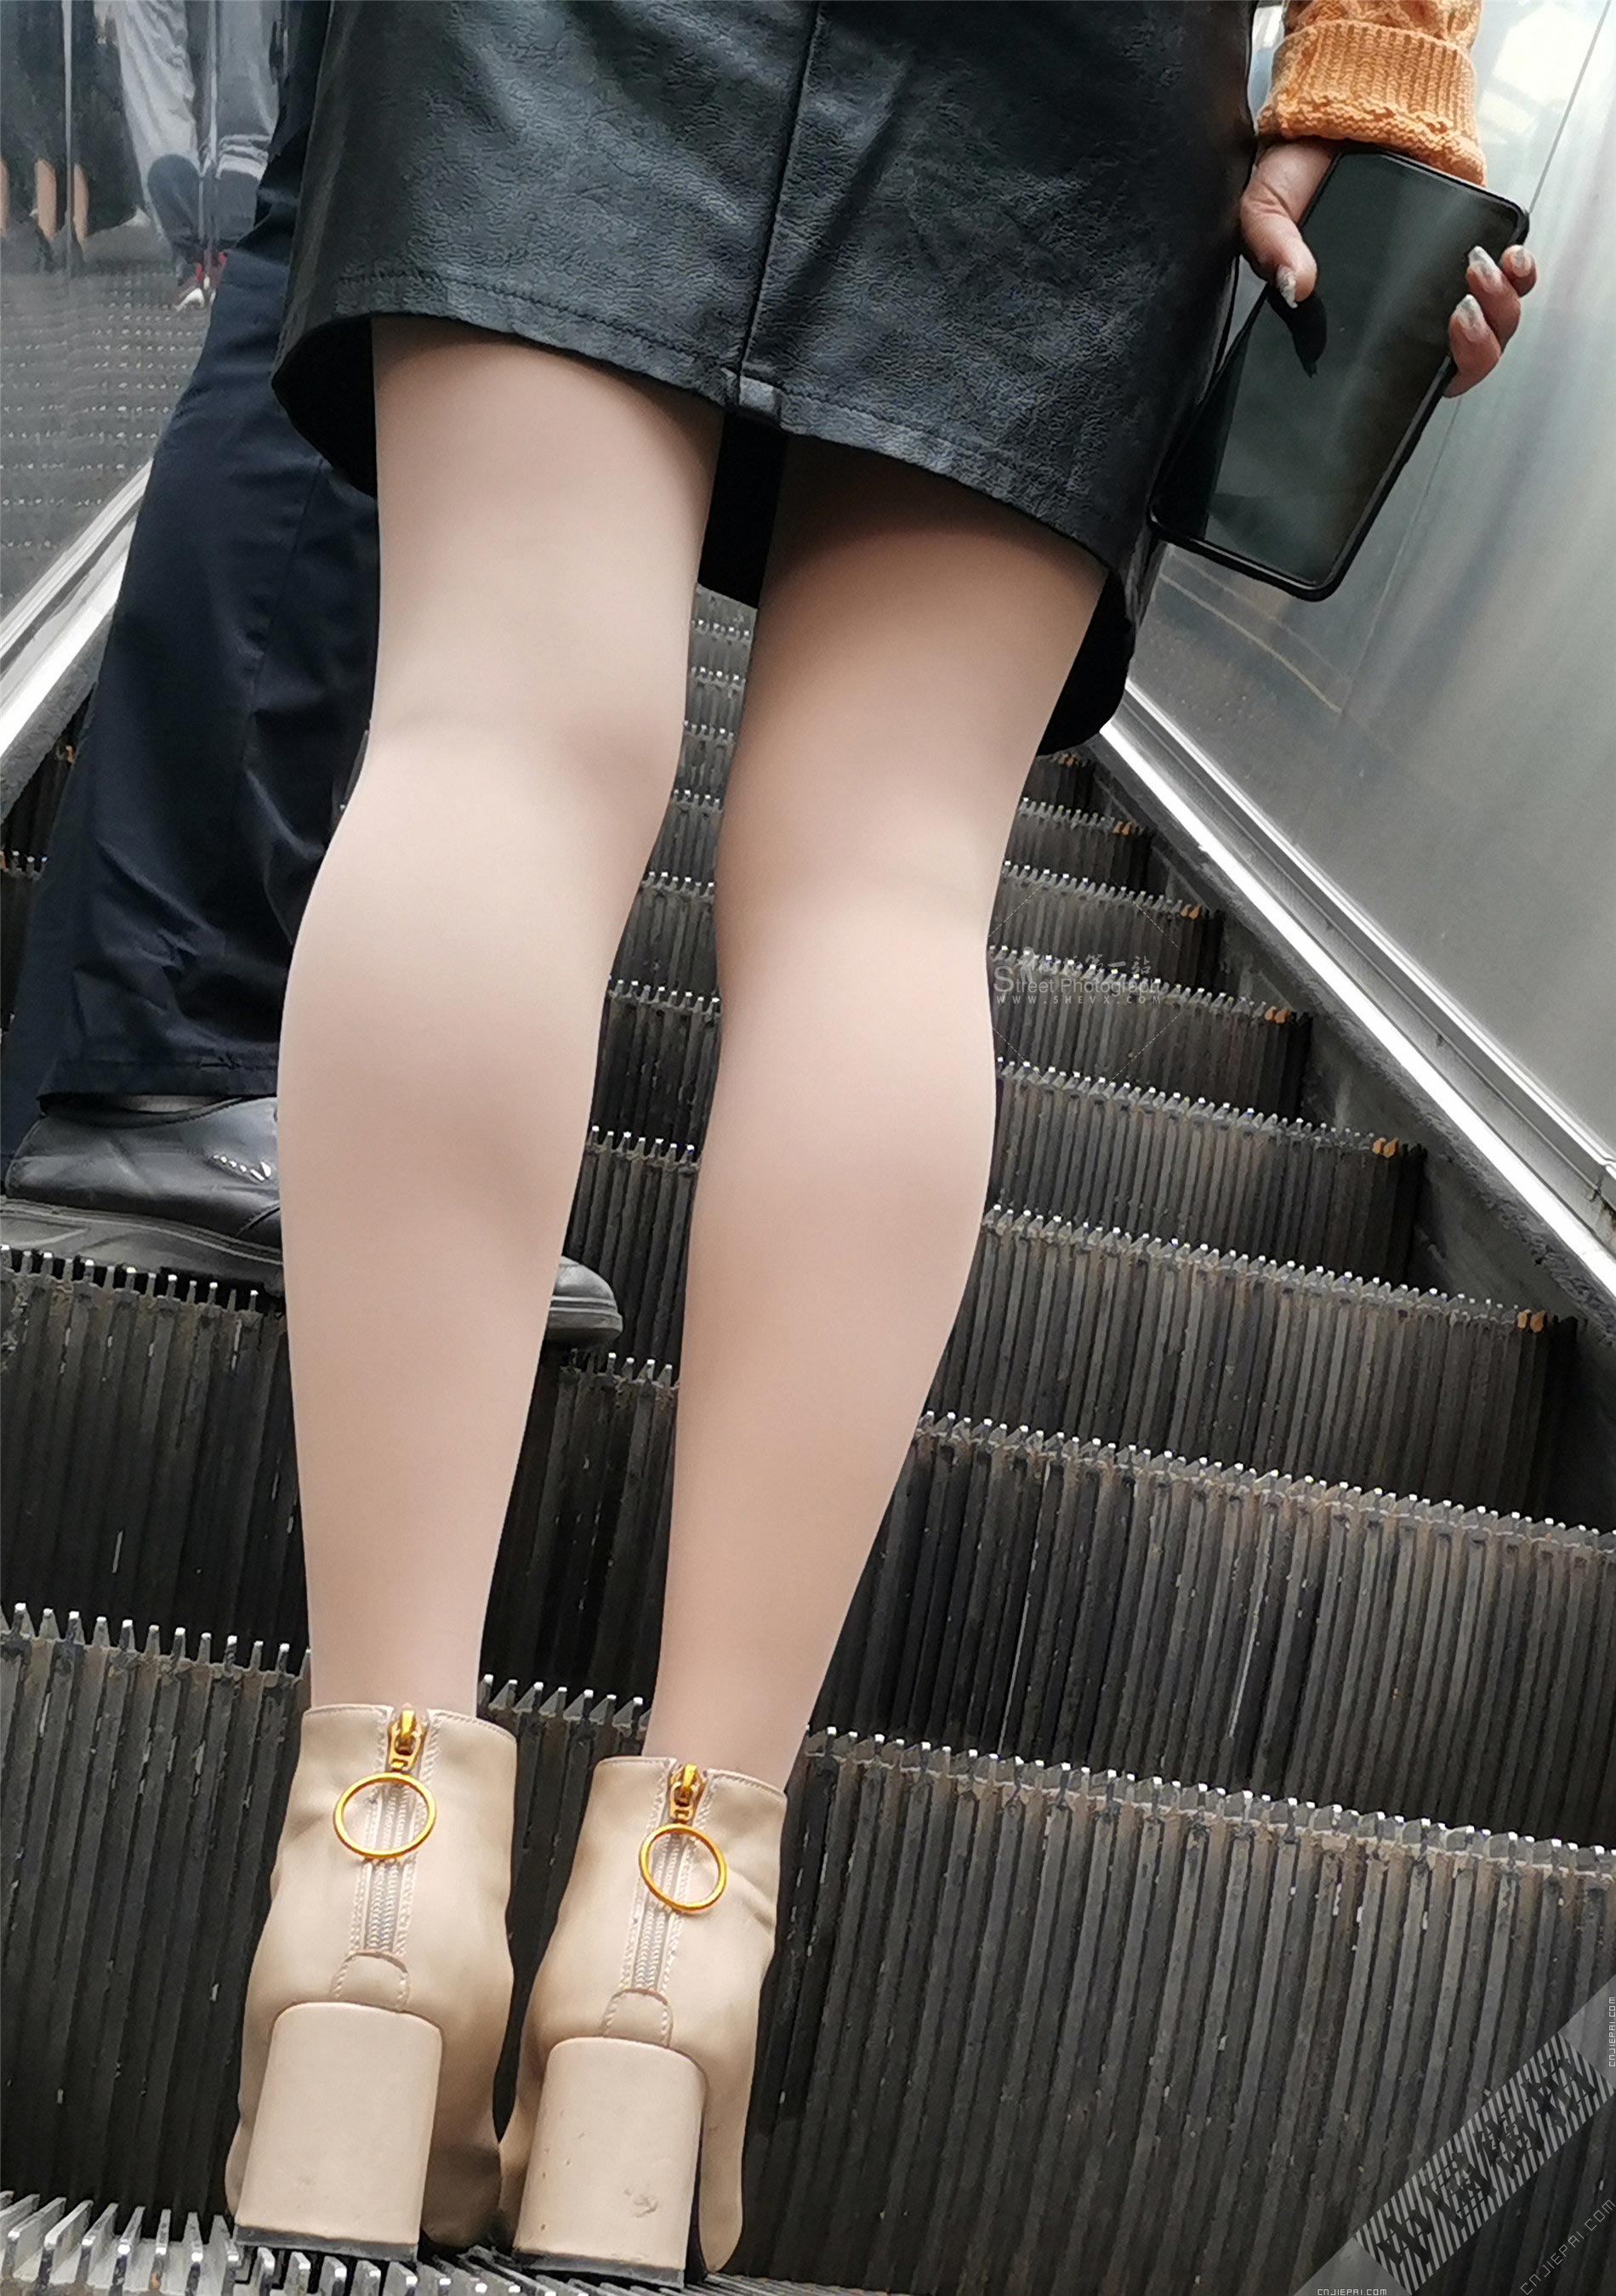 抓拍电梯上厚肉丝少妇光滑的双腿 图6